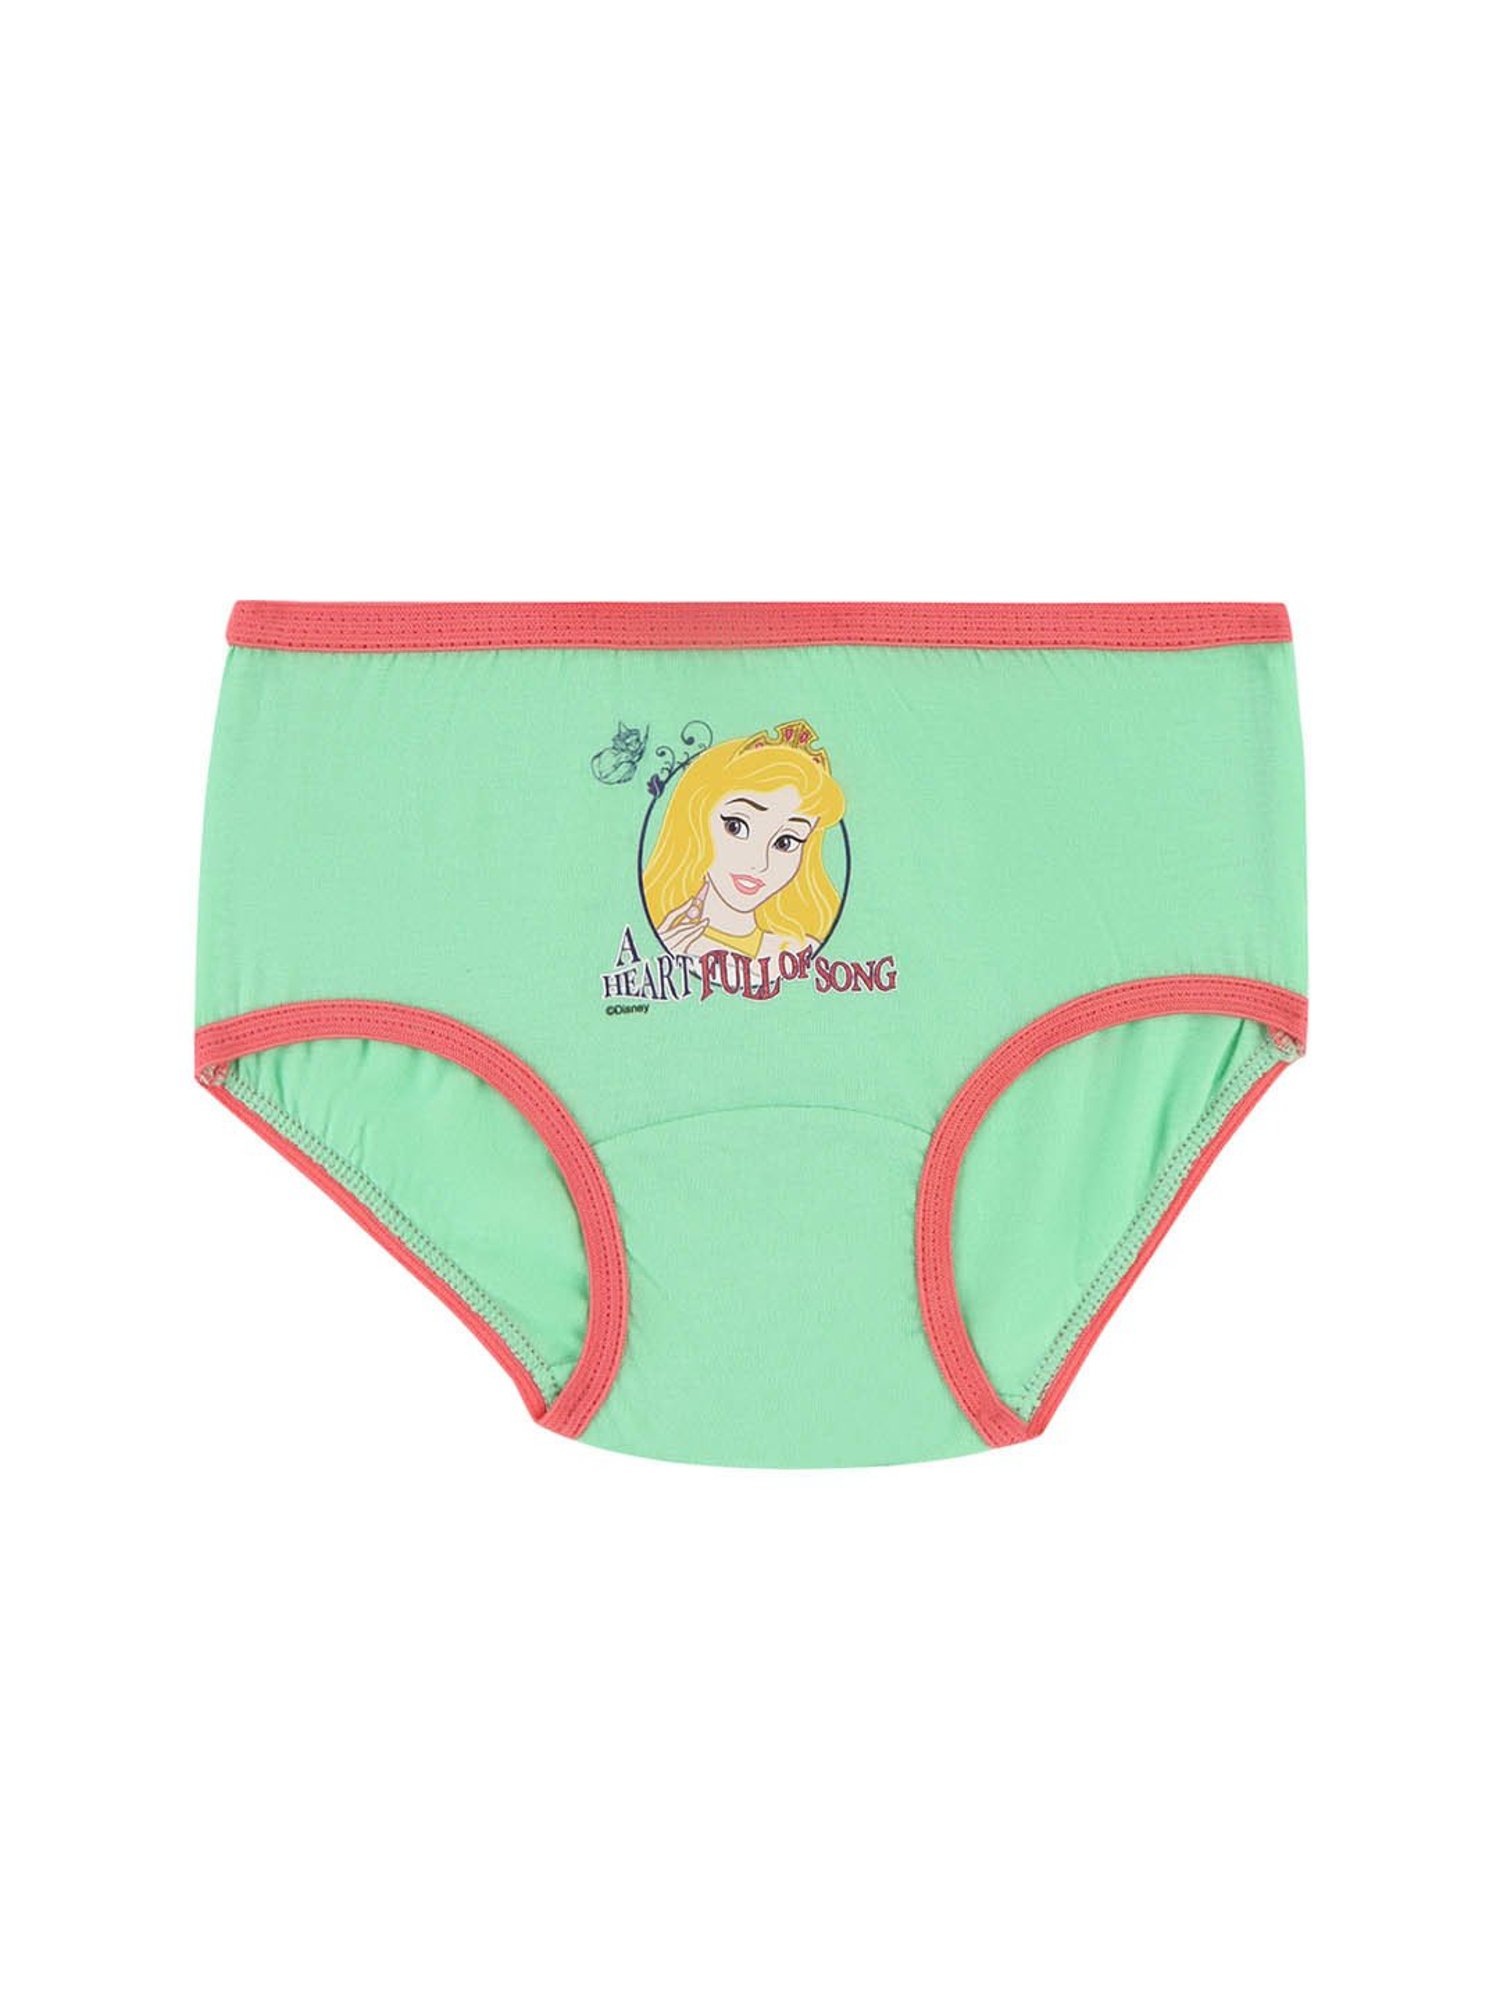 Disney Underwear for Children Wholesale Distributor